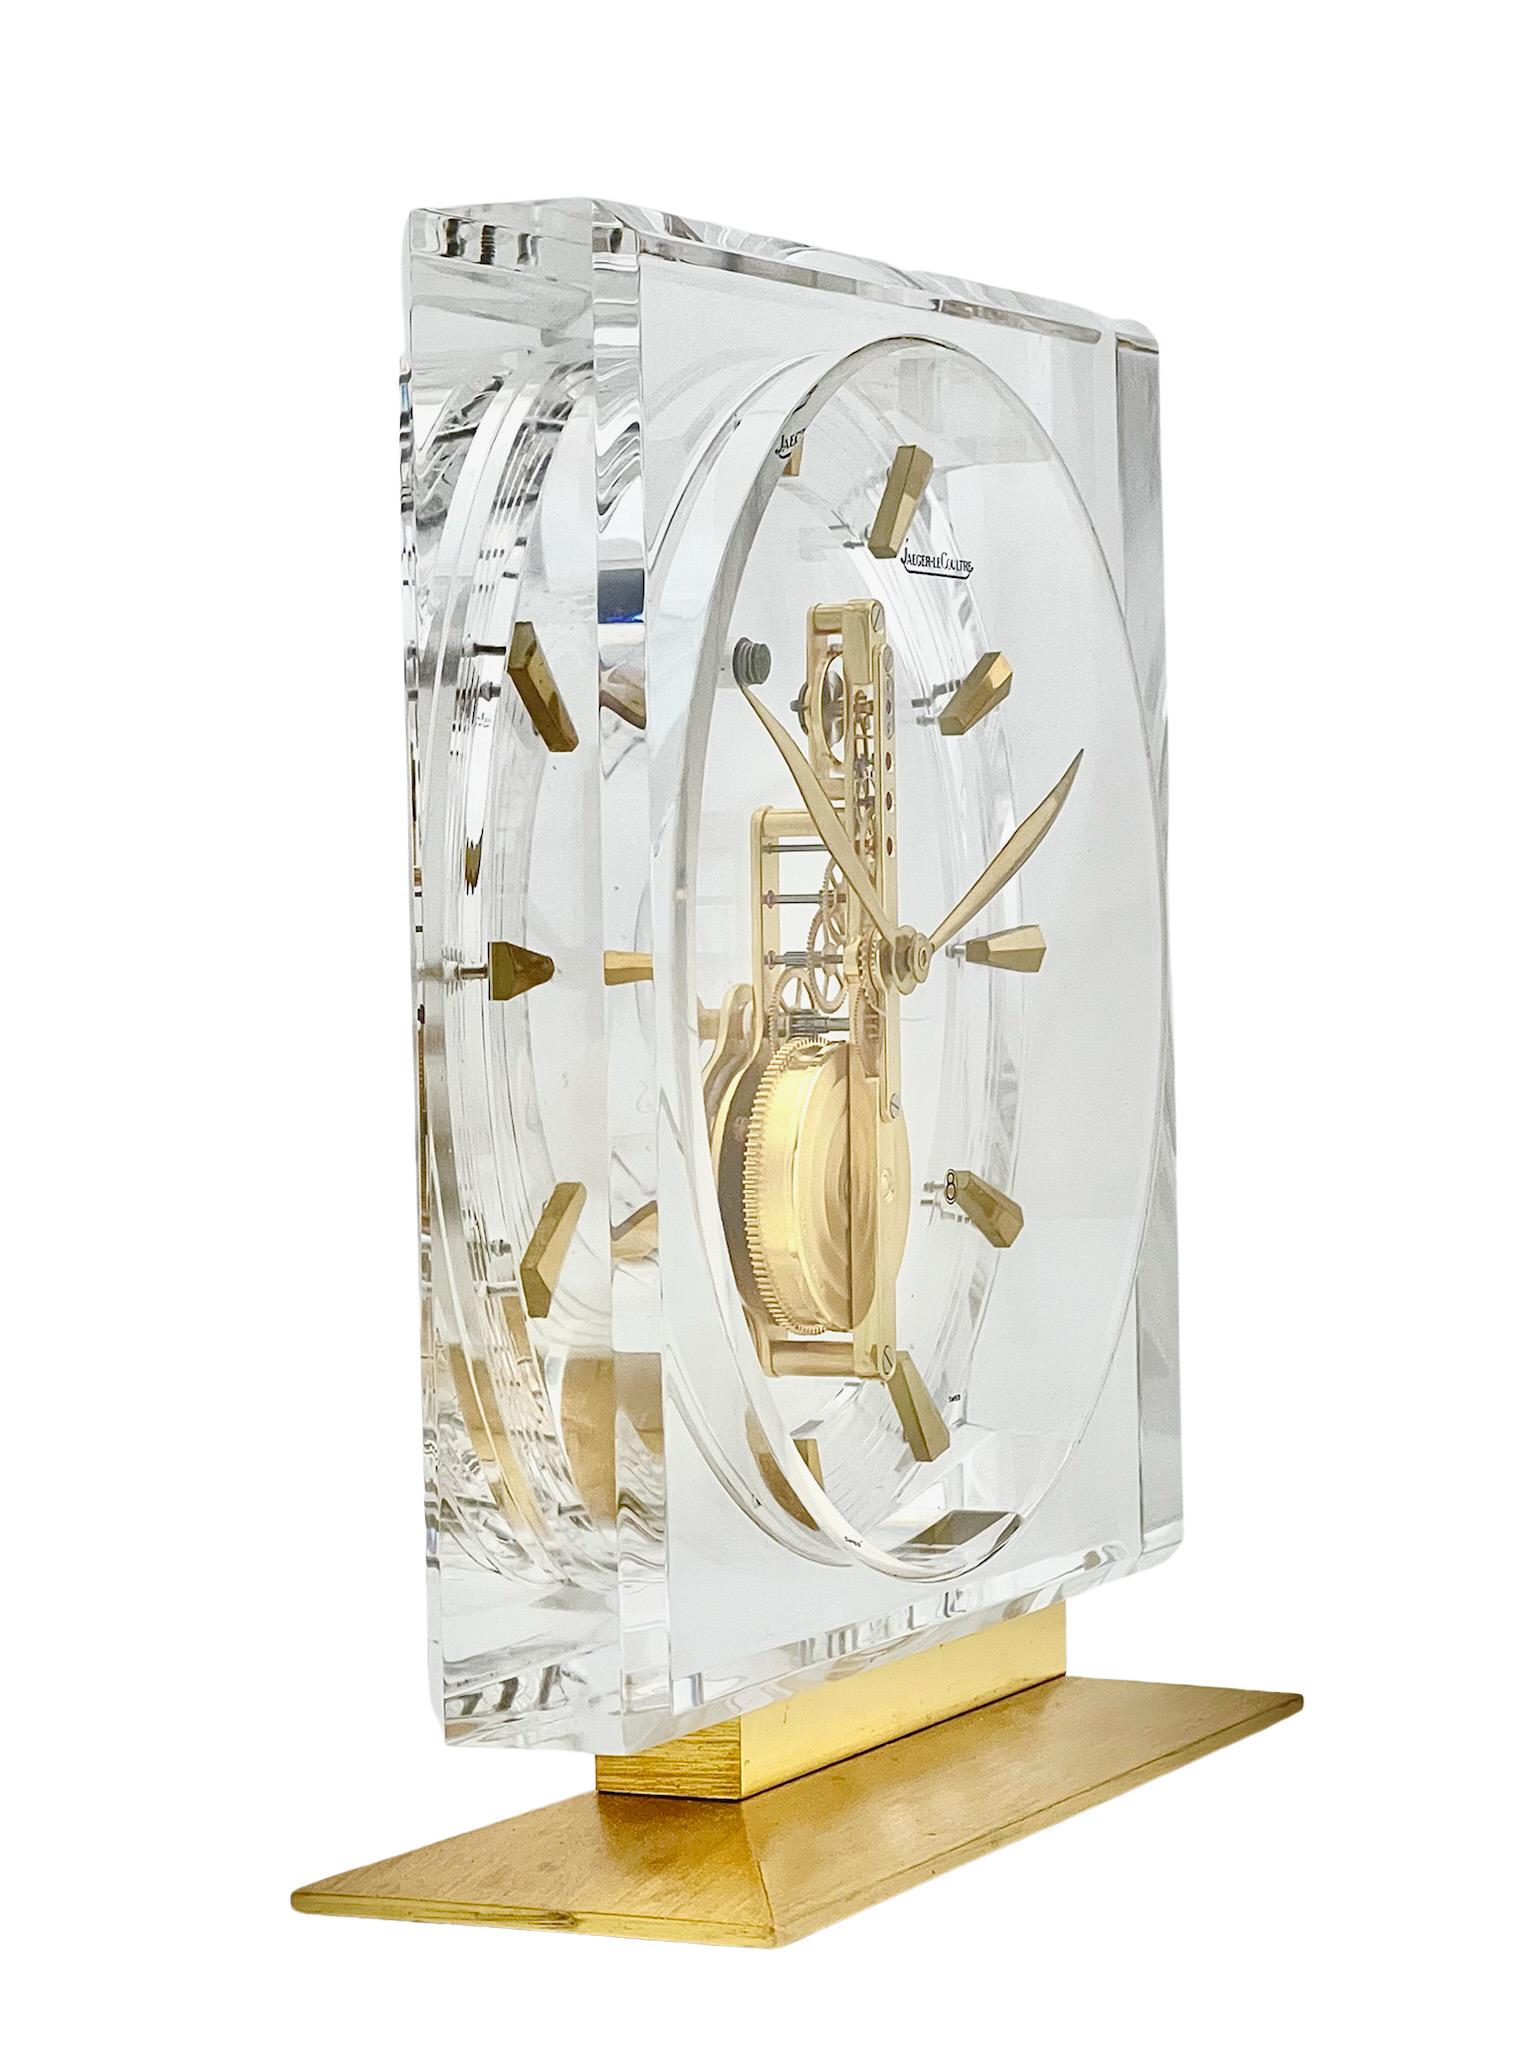 Eine atemberaubende Jaeger-LeCoultre Inline-Skelettuhr aus Lucit und Messing mit einem klaren, minimalistischen Design, das in jeder Umgebung stilvoll aussieht. Das Schöne an diesen Skelettuhren ist, dass man das 16-steinige Schweizer Uhrwerk